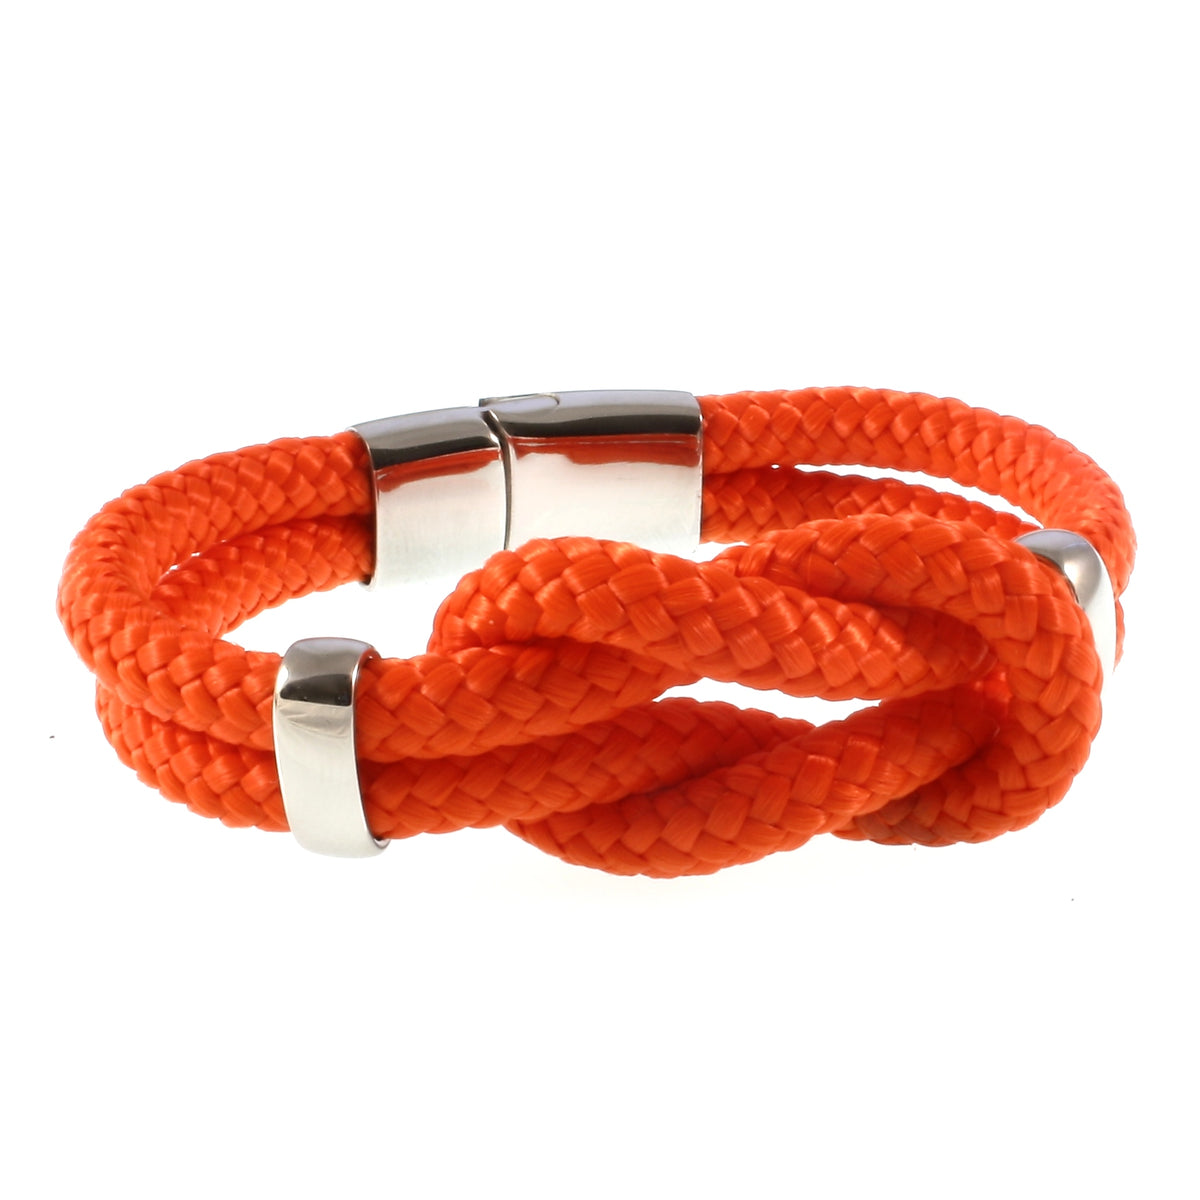 Damen-Segeltau-armband-pure-orange-silber-geflochten-Edelstahlverschluss-vorn-wavepirate-shop-st